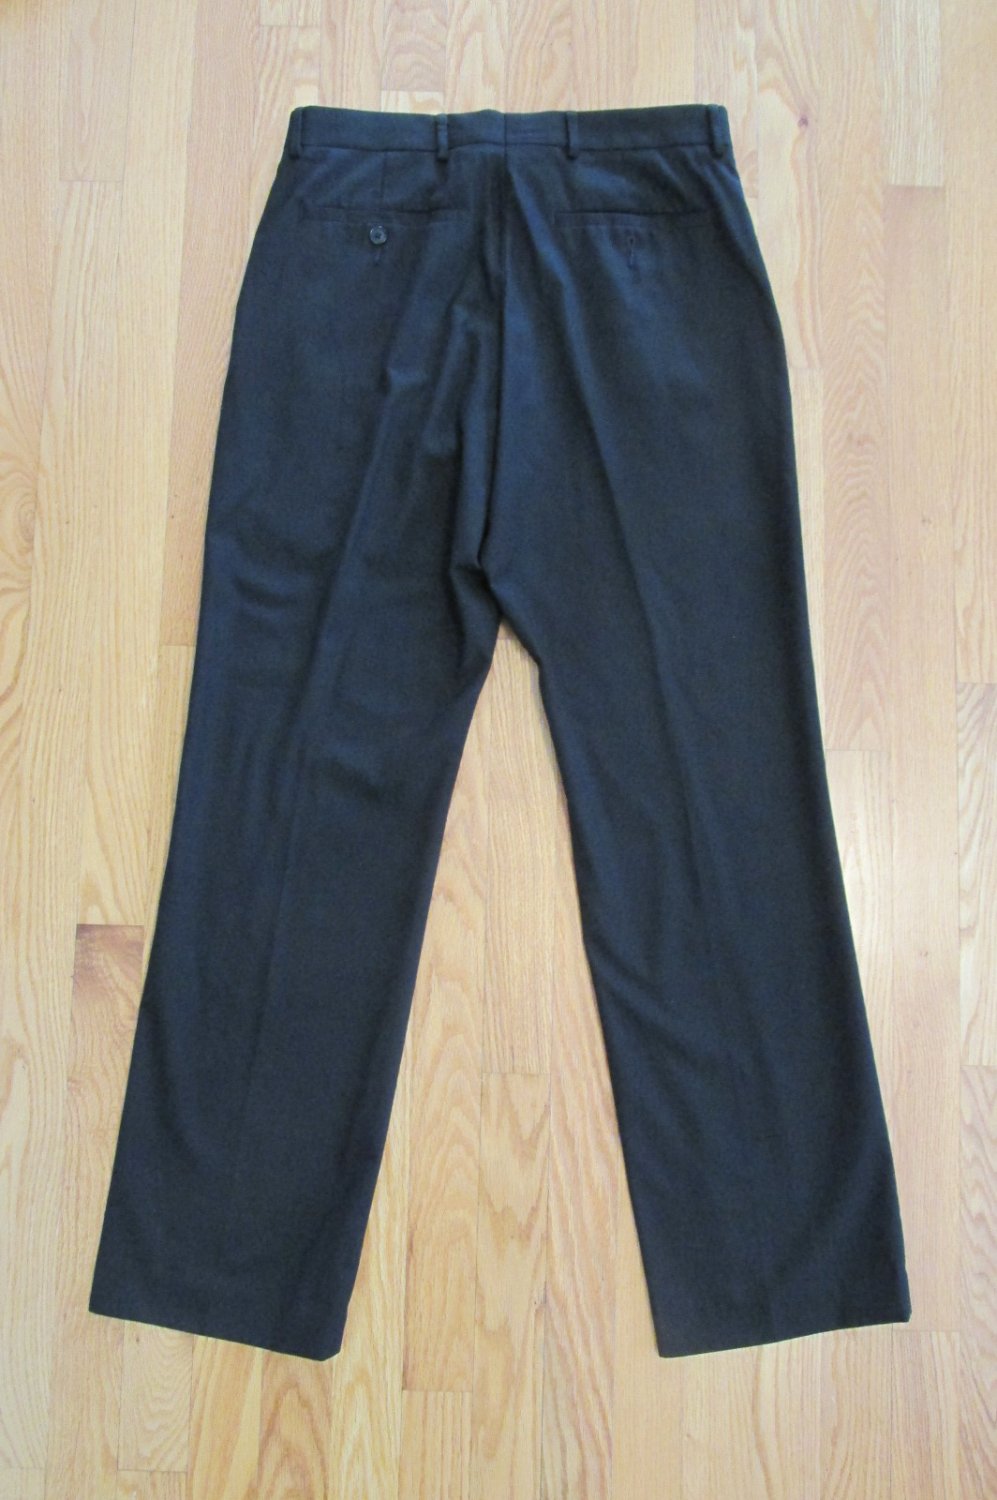 BILLY LONDON UK MEN'S SIZE 32 X 31 TROUSER BLACK FLAT FRONT PANTS DRESS ...